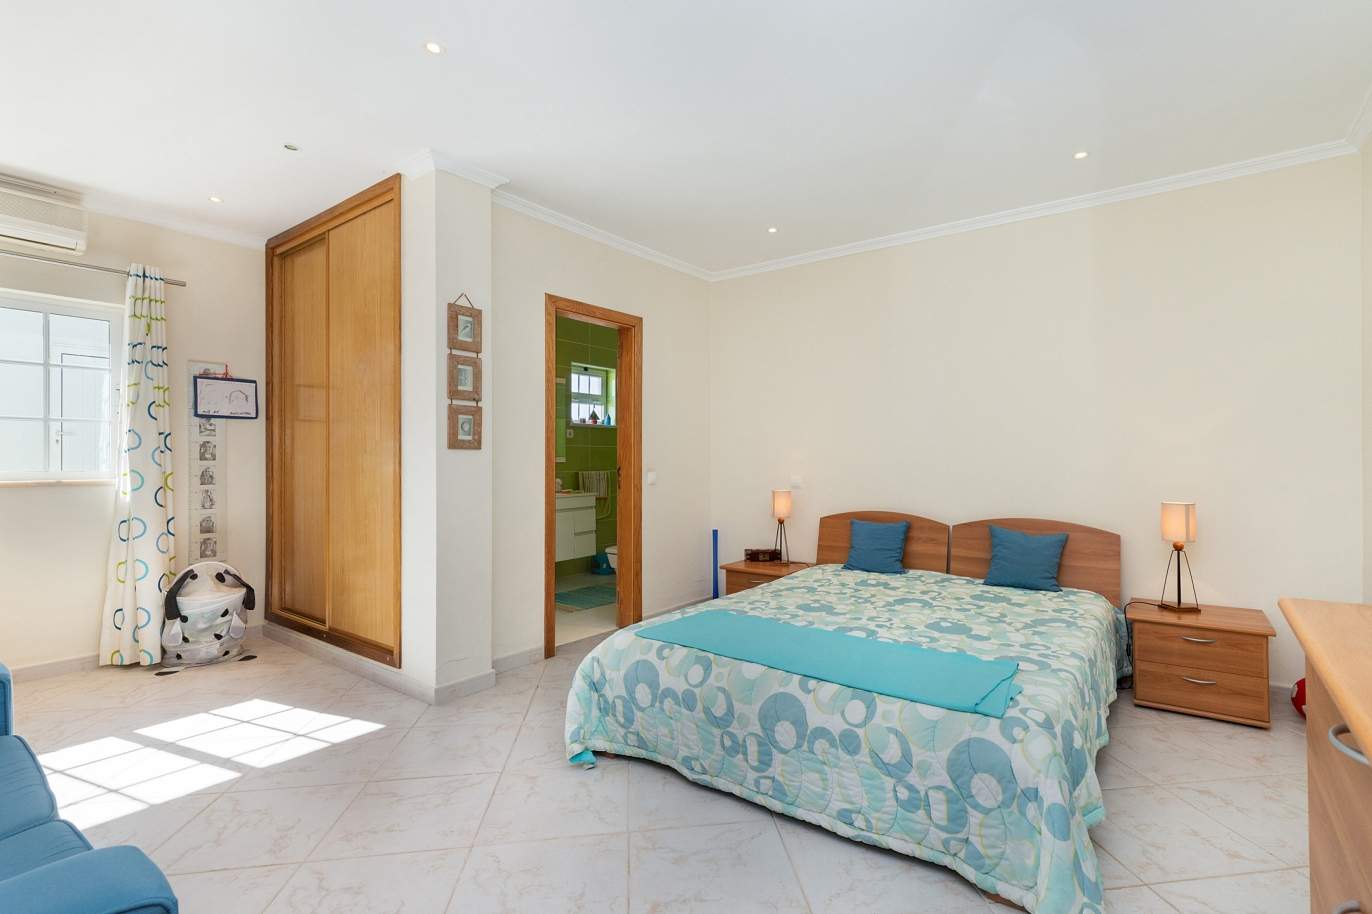 4 bedroom villa with pool and garden, Albufeira, Algarve_180570